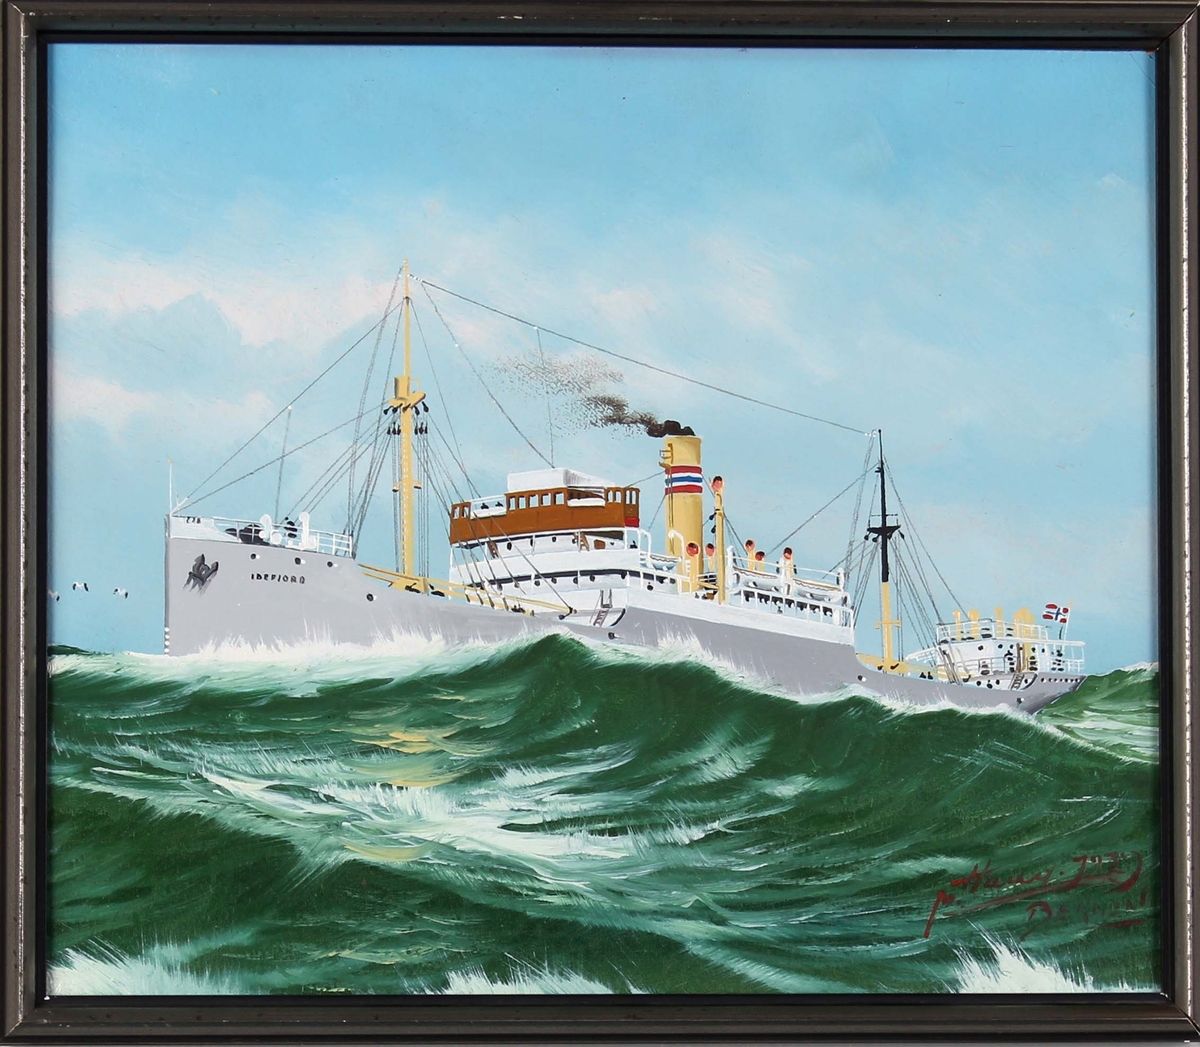 Skipsportrett av DS IDEFJORD under fart i åpen sjø.